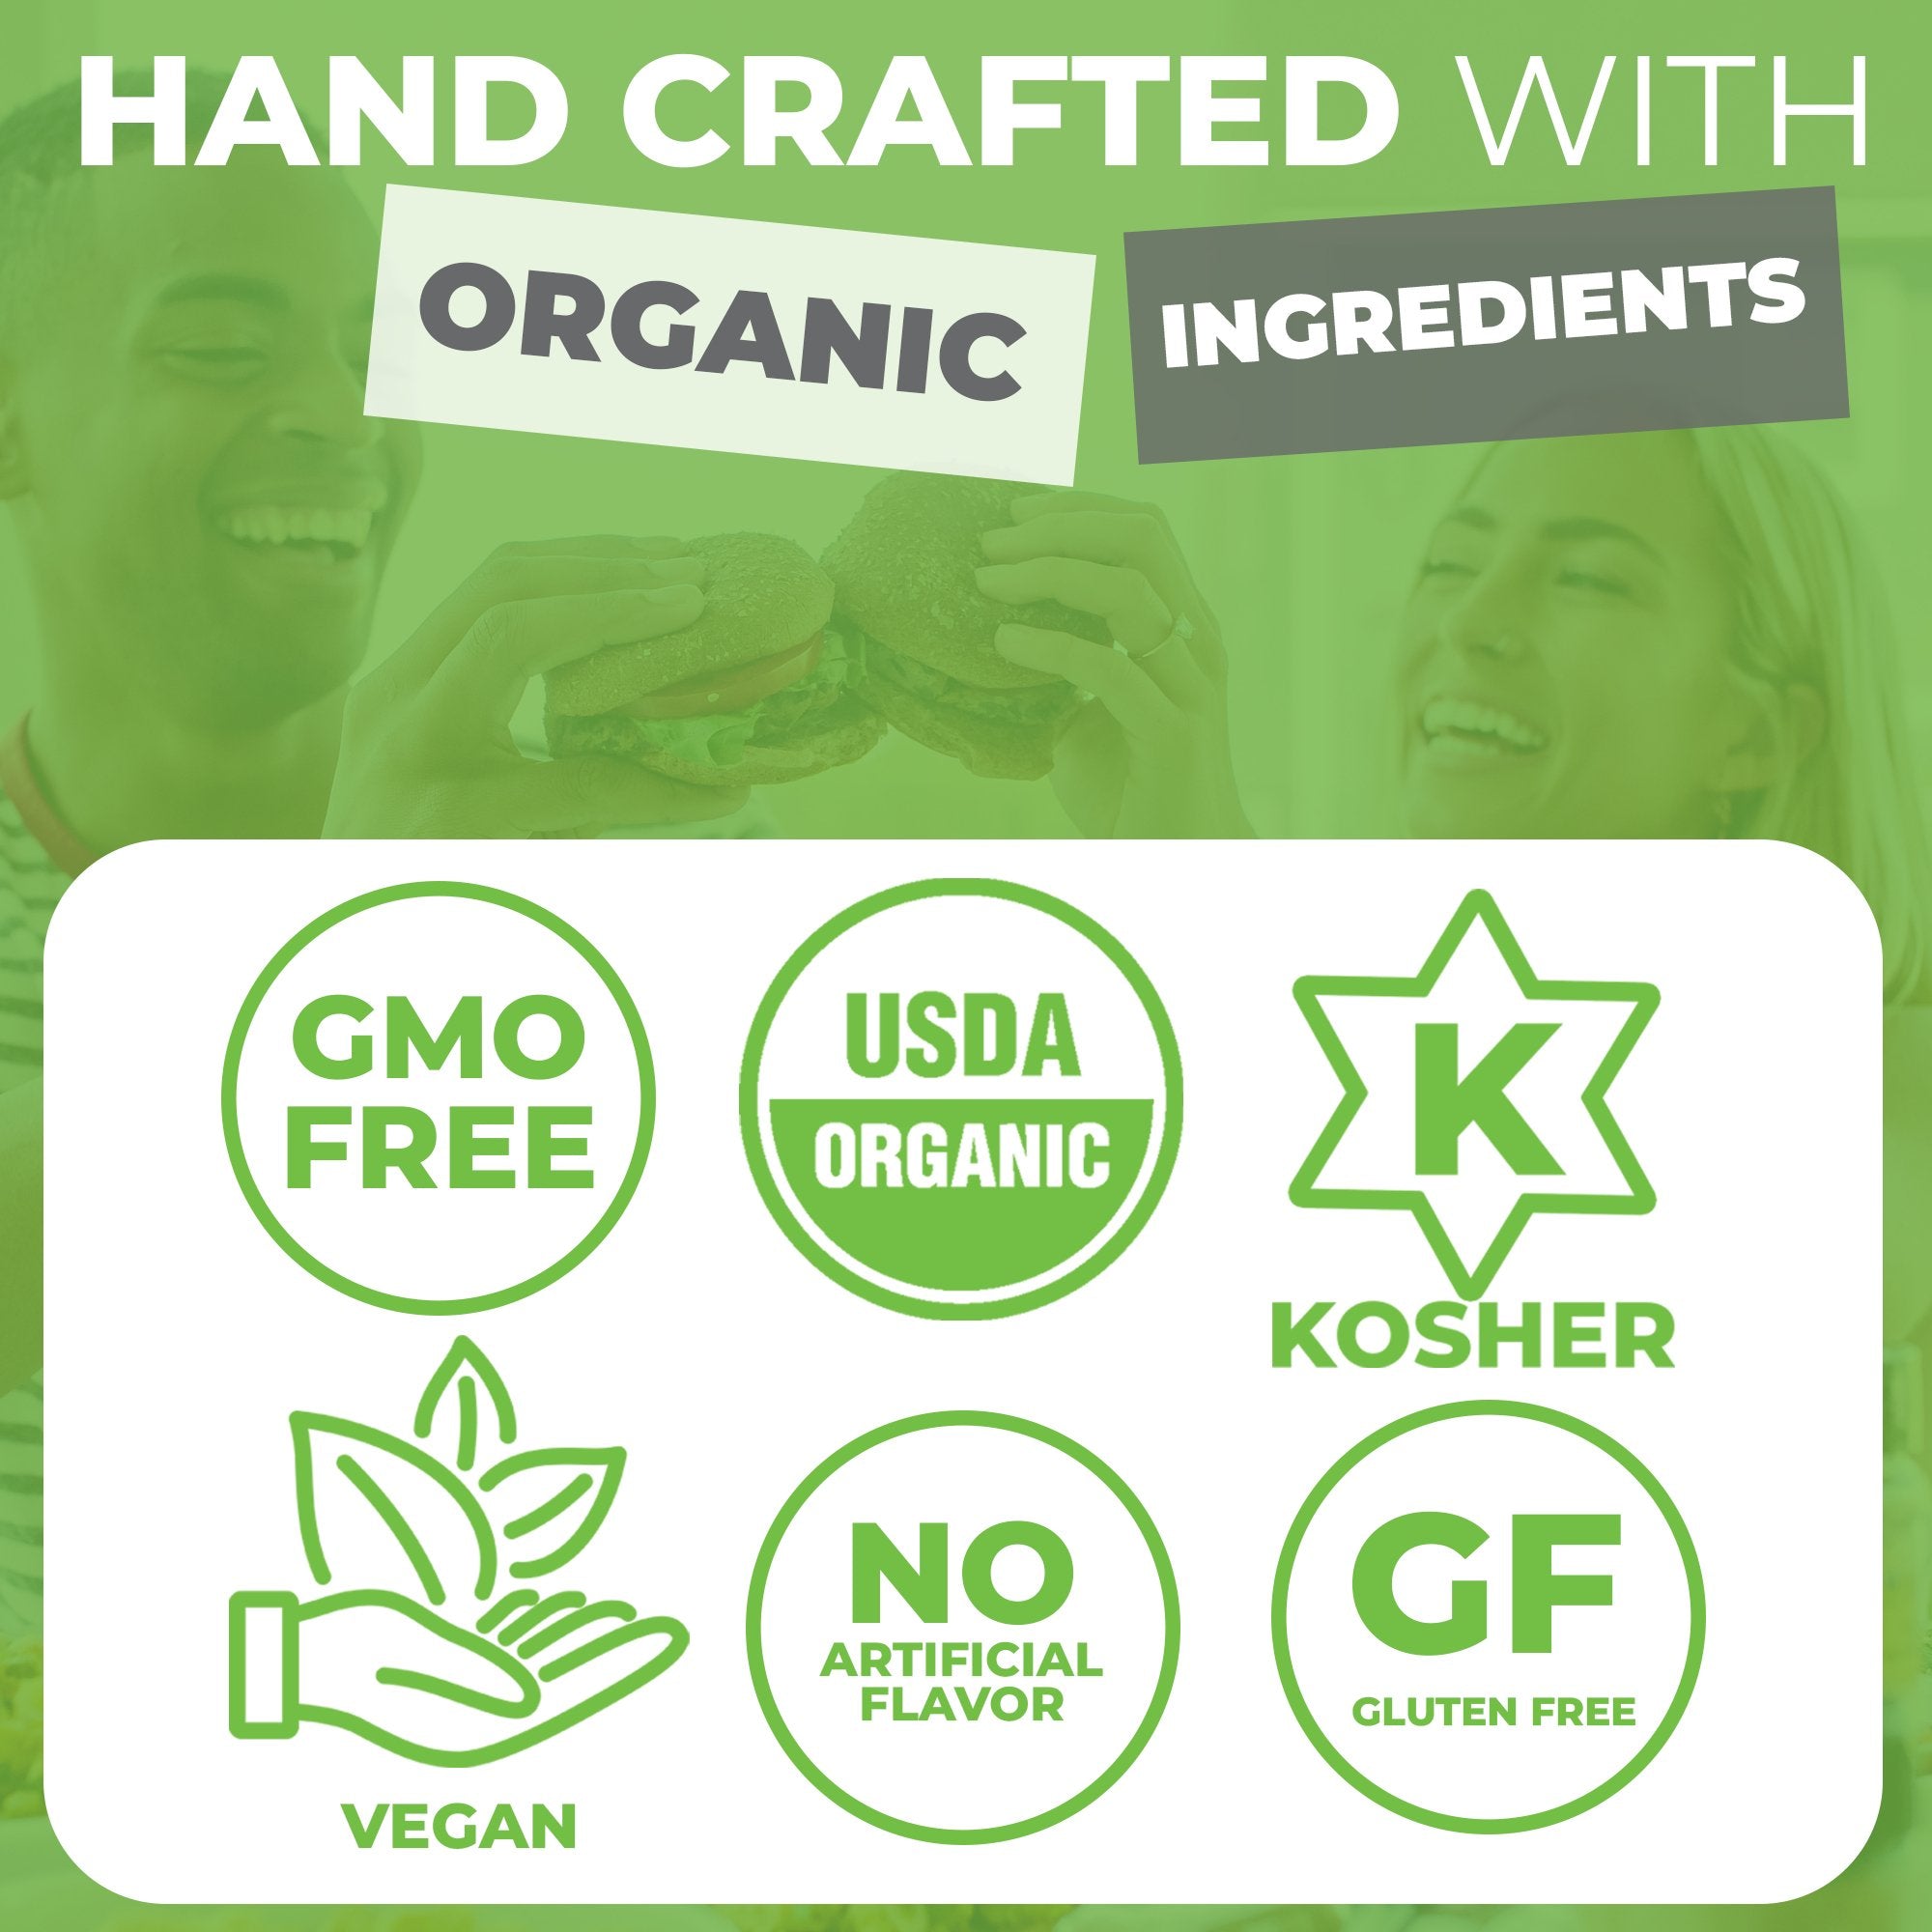 FreshJax Summer Savory Herbs are GMO-Free, USDA Organic, Kosher, Vegan and Gluten-Free